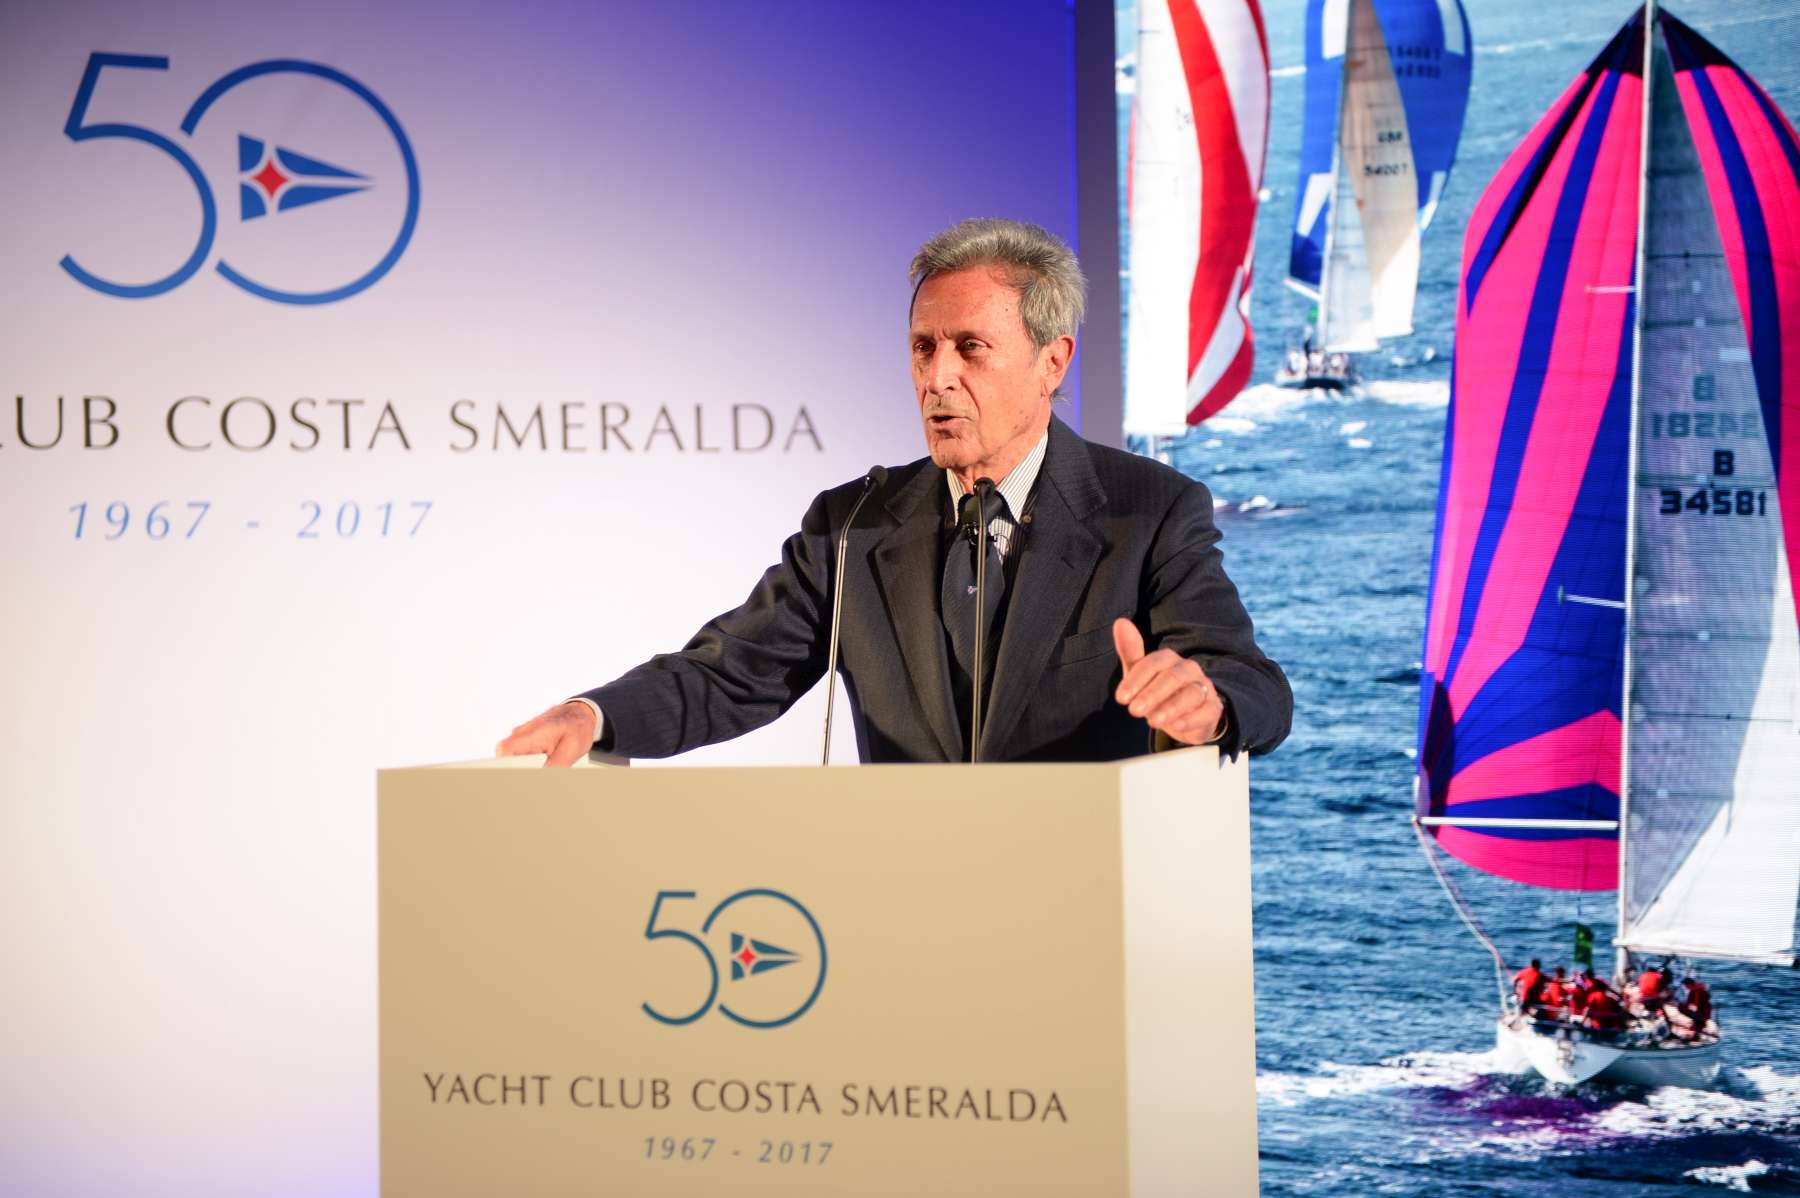 I 50 ANNI DELLO YACHT CLUB COSTA SMERALDA - NEWS - Yacht Club Costa Smeralda